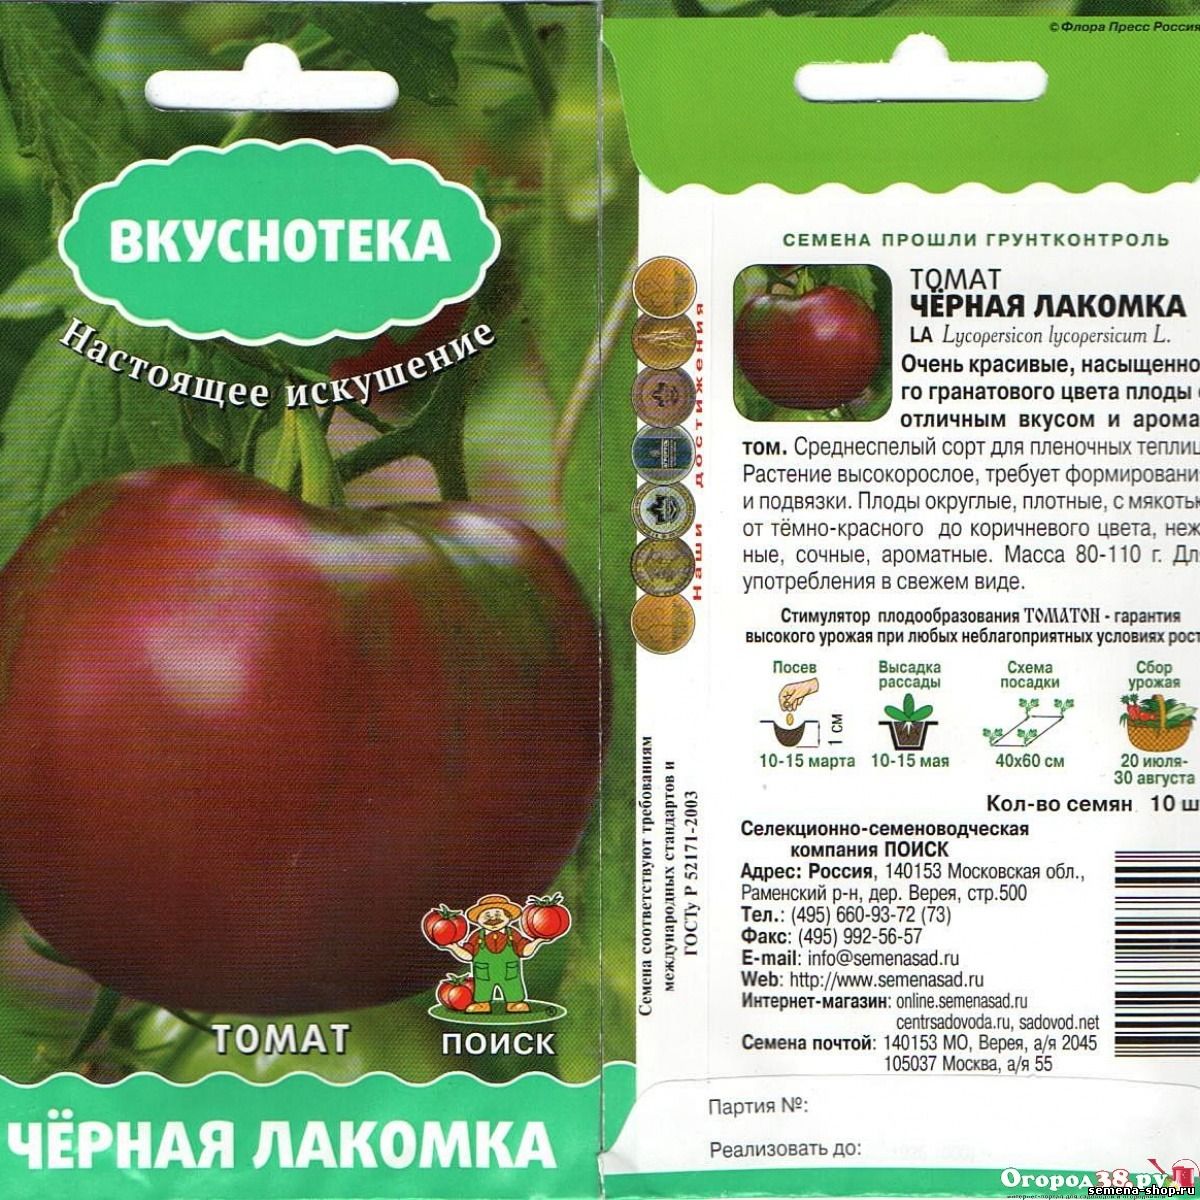 Описание сорта томата сахарный бизон, рекомендации по выращиванию и уходу